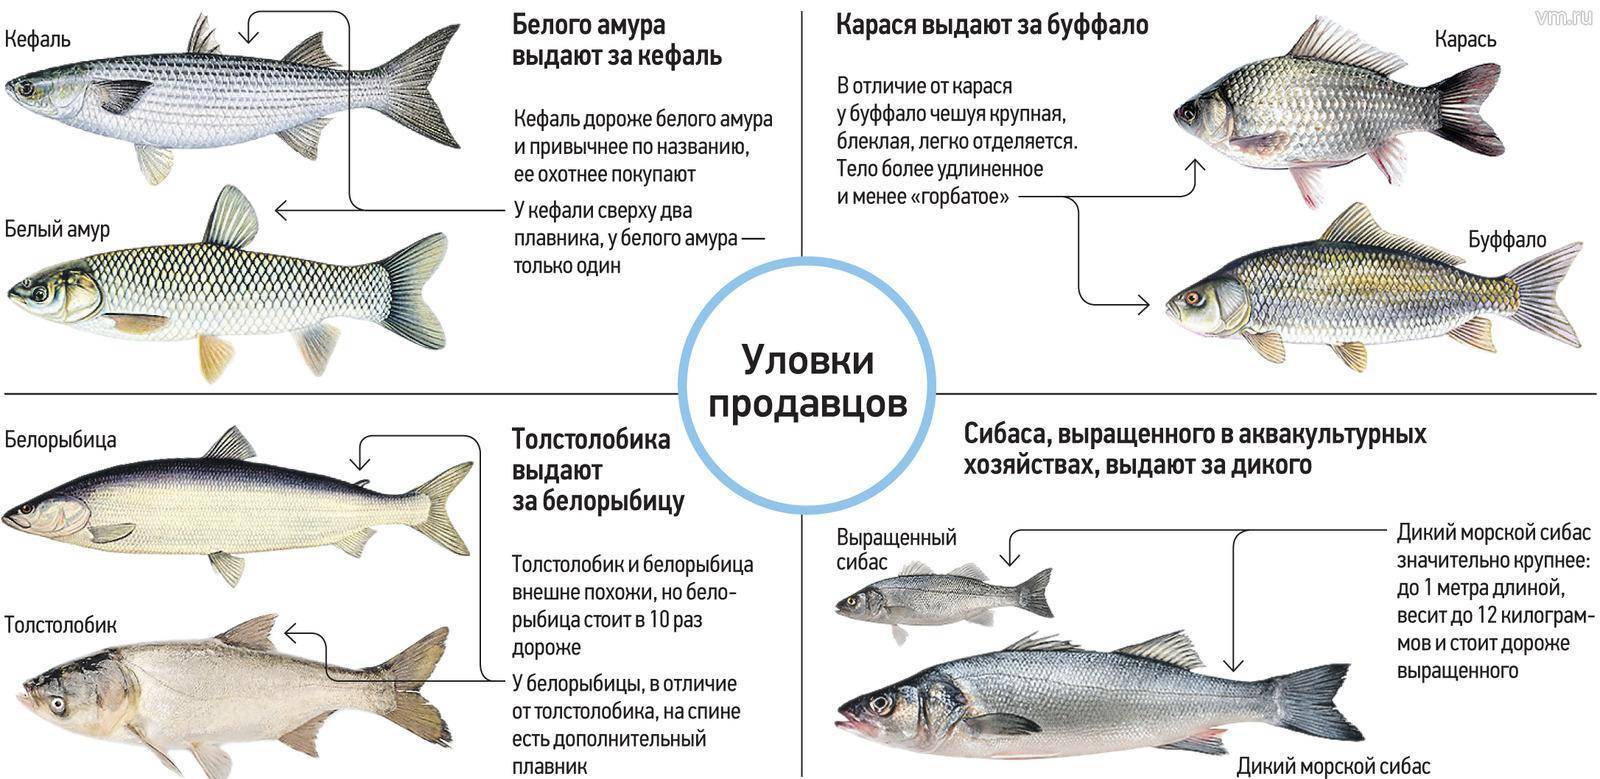 Какая рыба водится в пресных водоемах россии – список, характеристика и фото